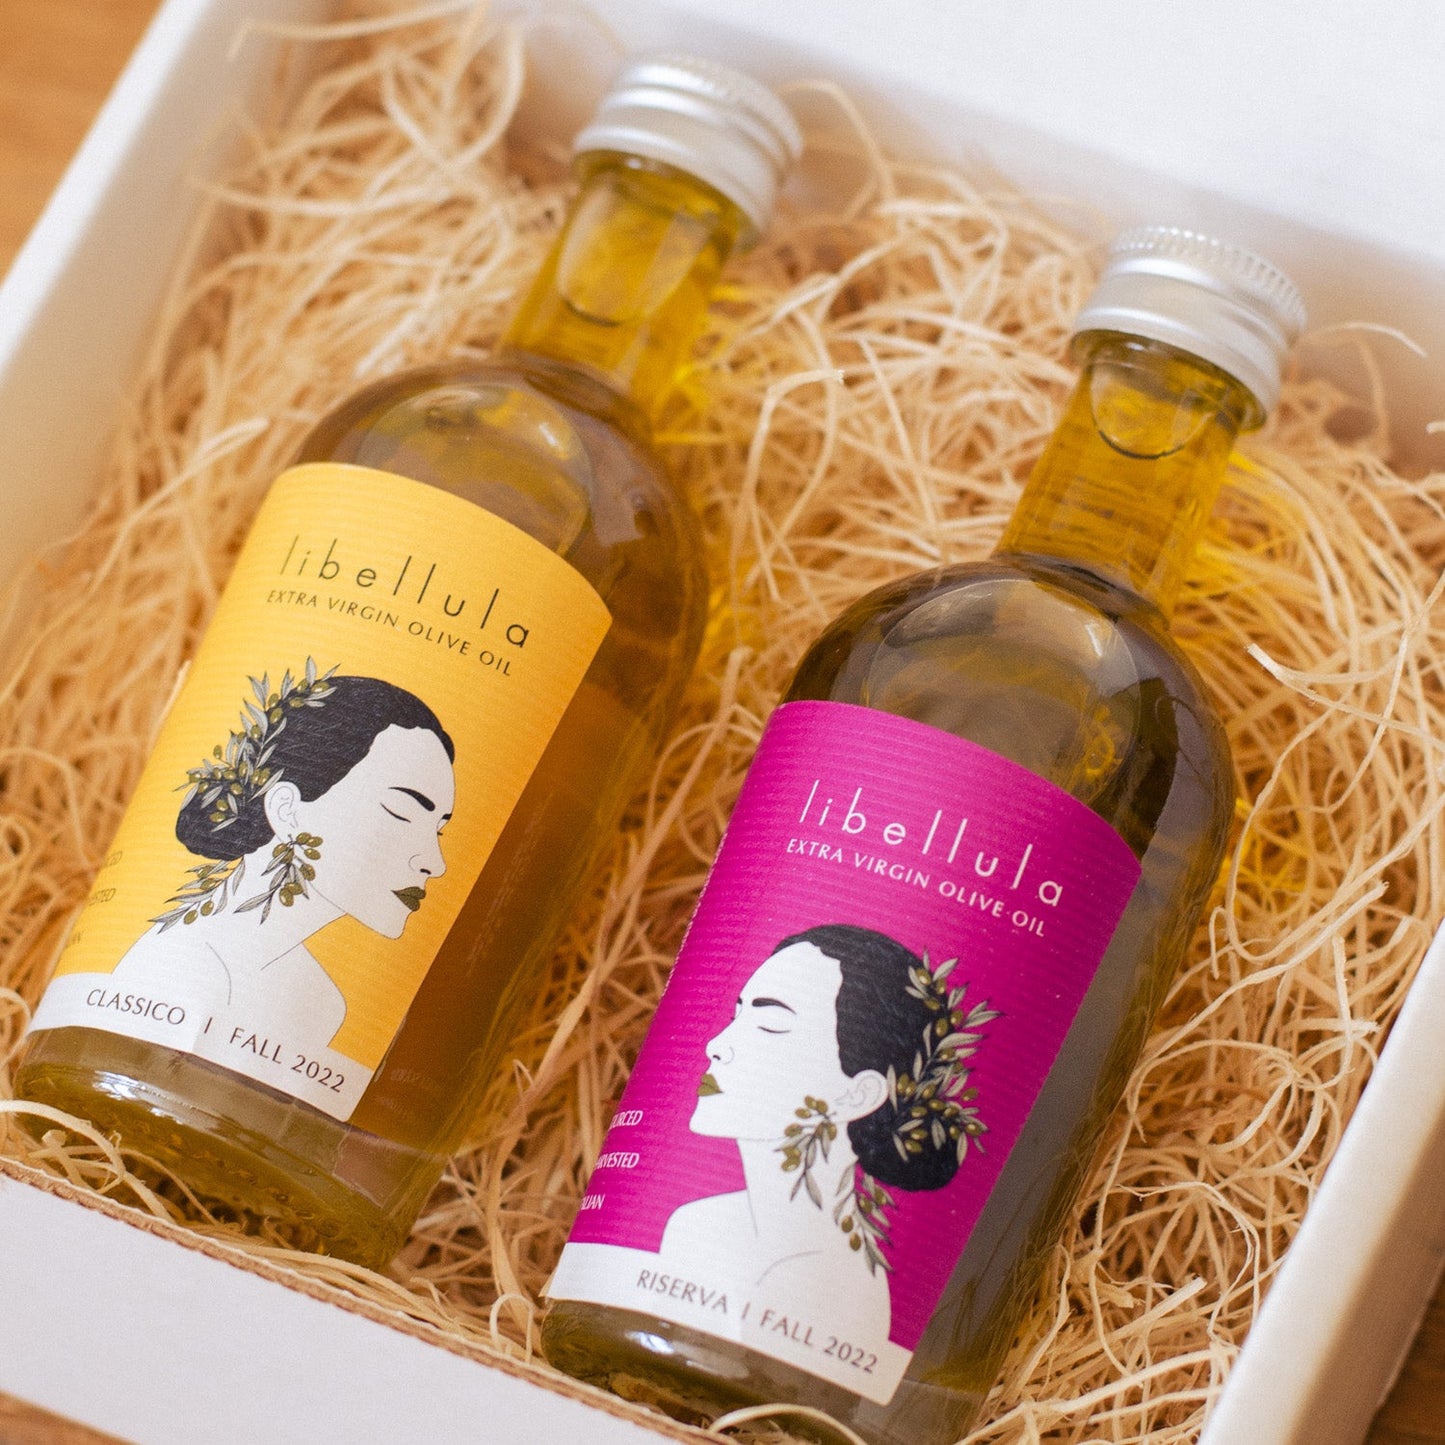 Olive Oil Tasting - Libellula